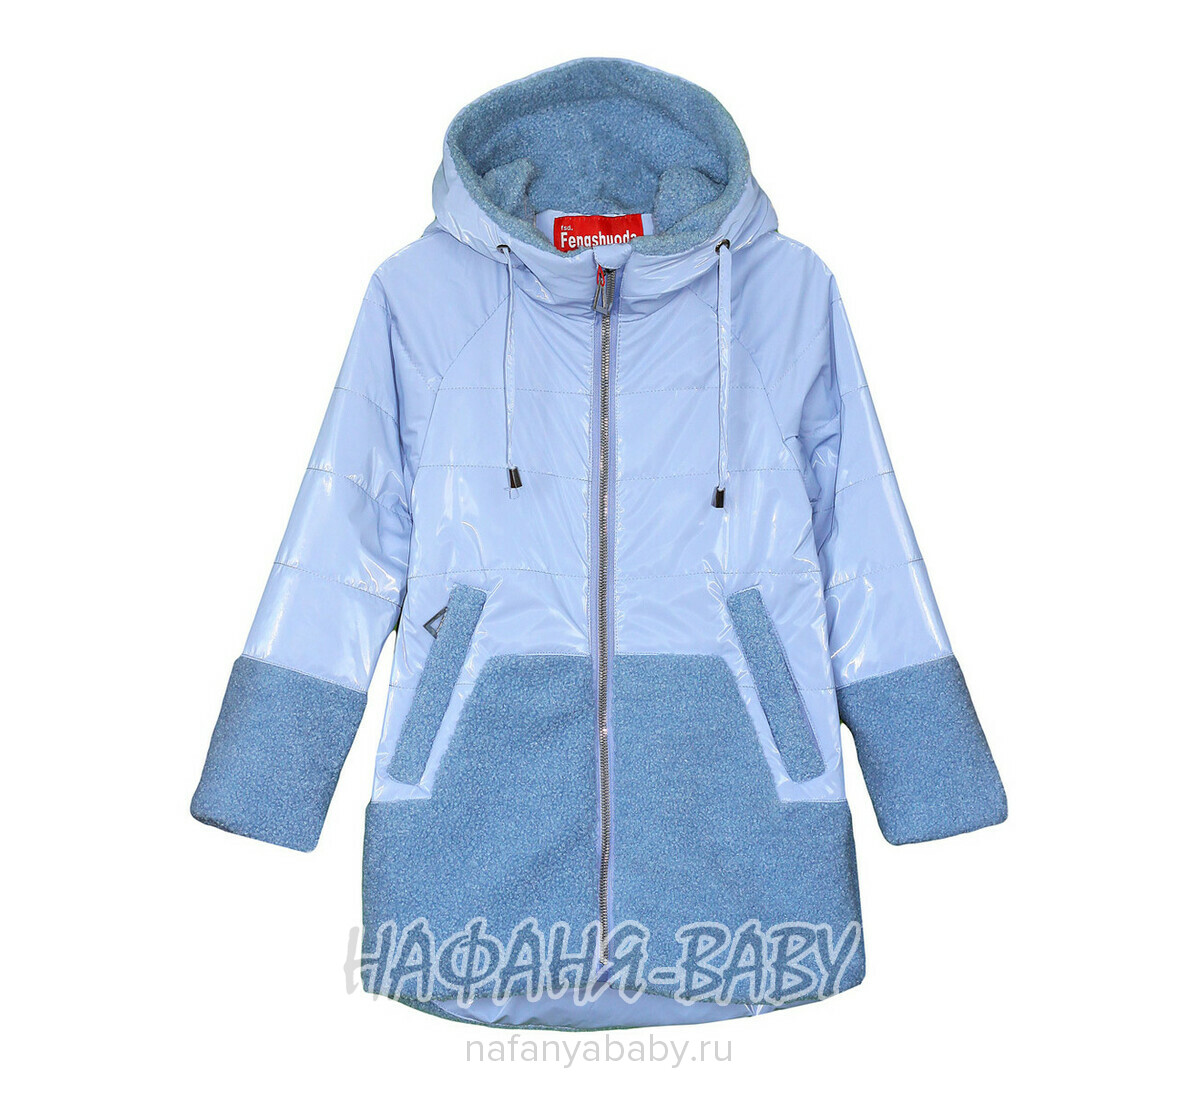 Детская демисезонная куртка FSD, купить в интернет магазине Нафаня. арт: 1027-1.